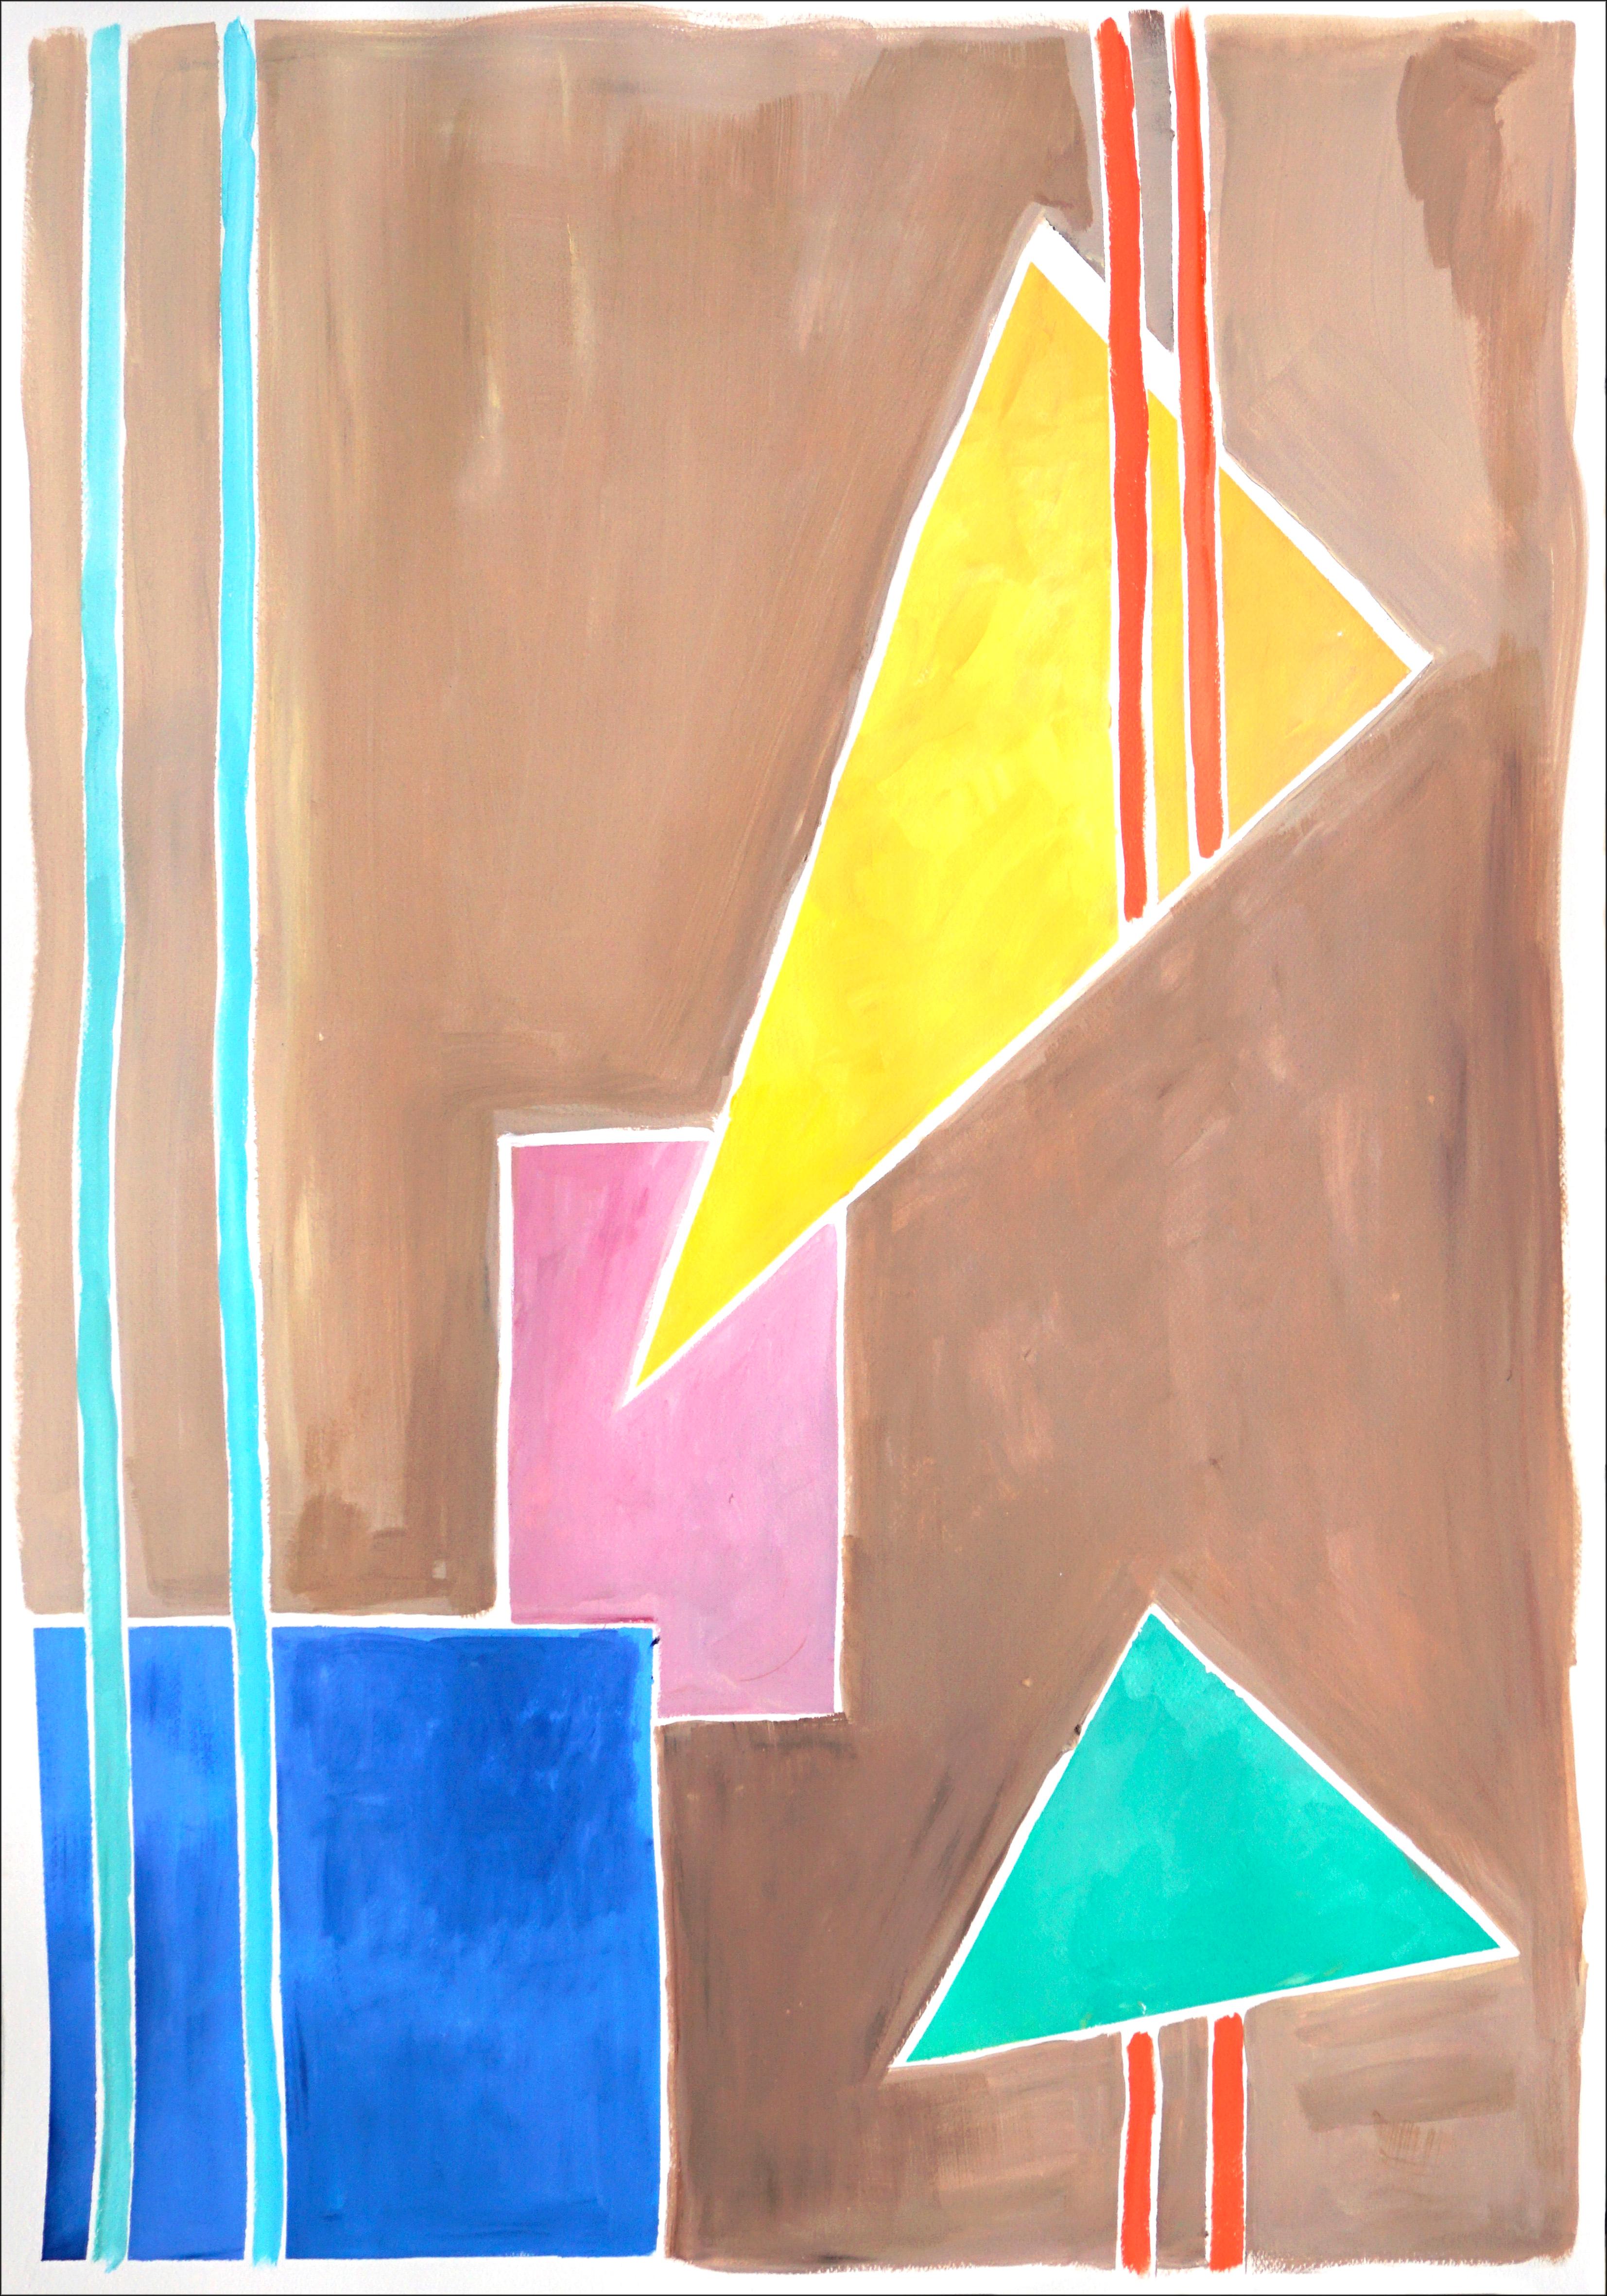 Natalia Roman Still-Life Painting – Balanced Geometrie I, Primär pastellfarbene Töne, Formen und Linien auf hellbraunem Hintergrund